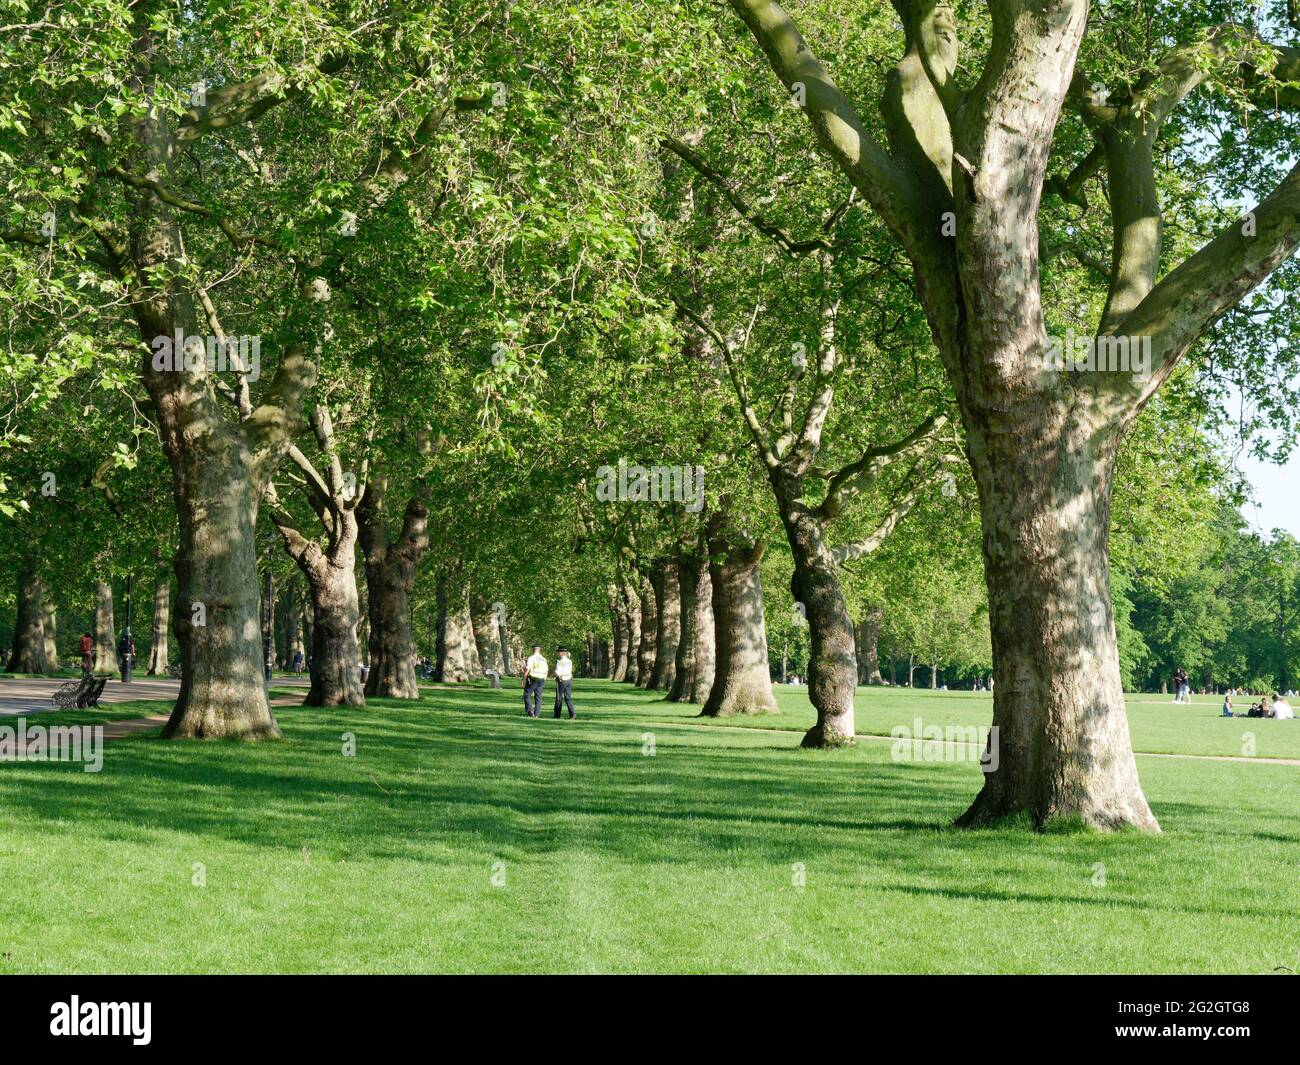 Londres, Grand Londres, Angleterre - 27 mai 2021 : 2 policiers marchant dans les arbres de Hyde Park portant des vestes haute visibilité Banque D'Images